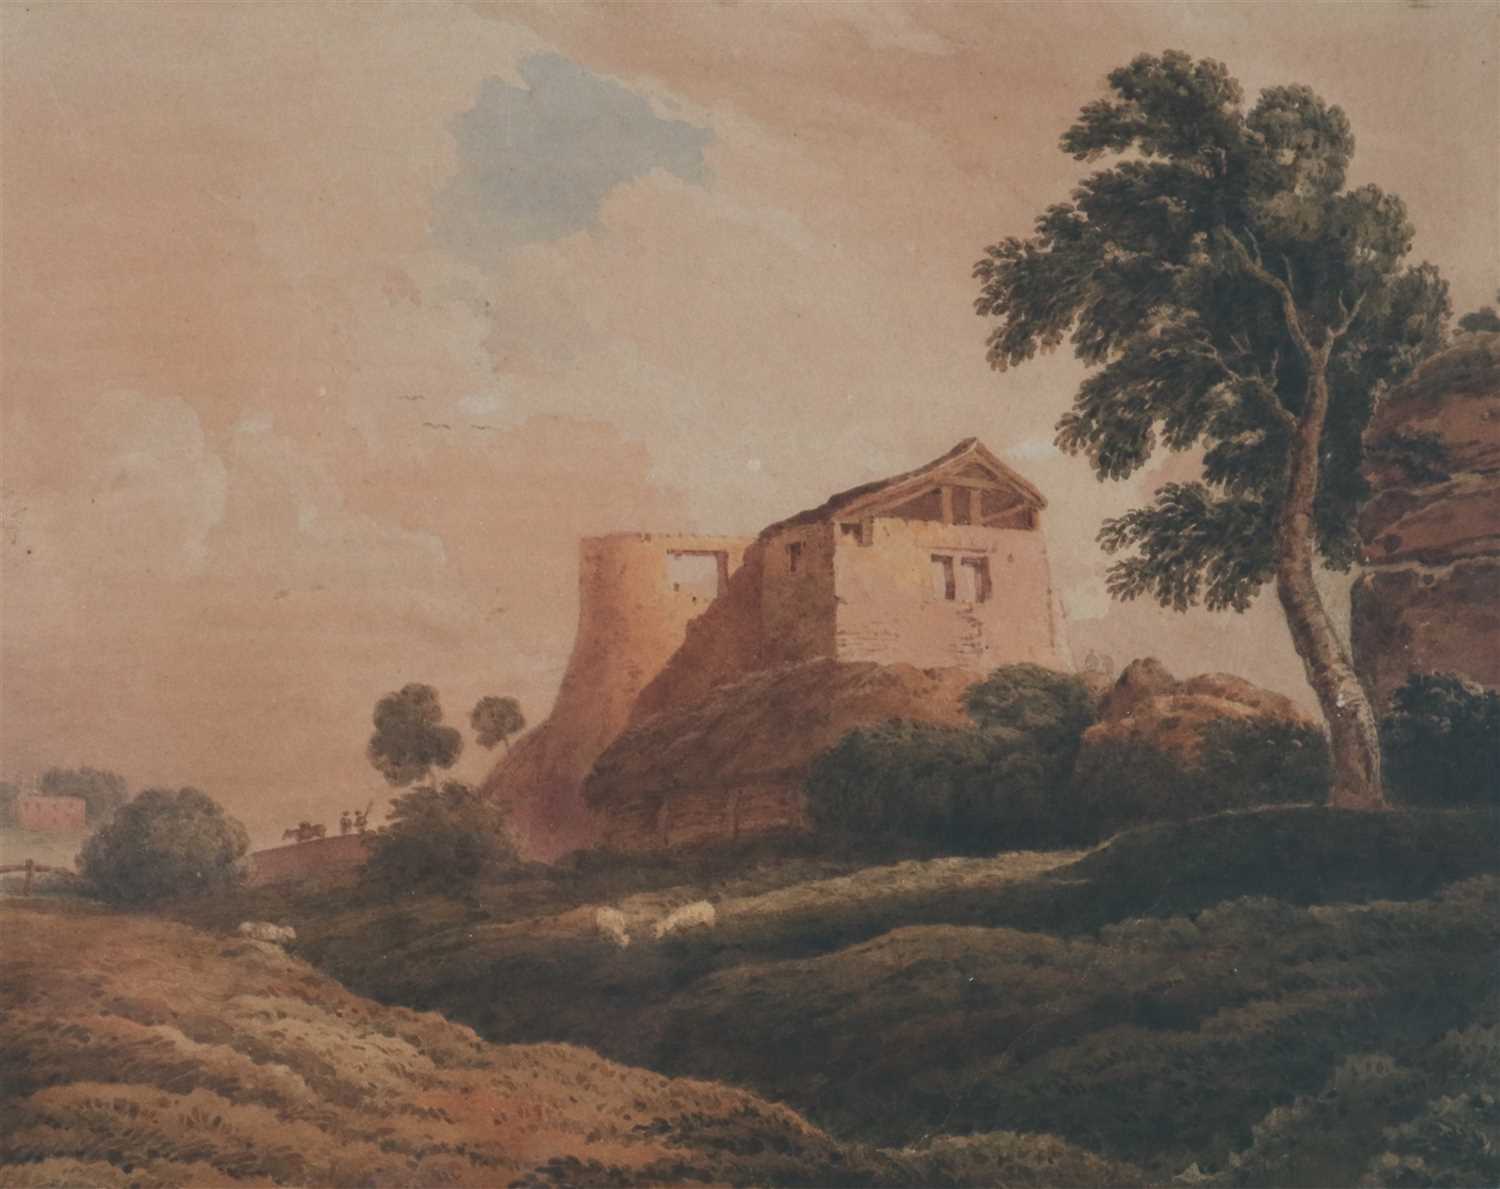 Lot 38 - John Varley (1778-1842), 'Tree, Barn and Ruined Oast House of Keln'